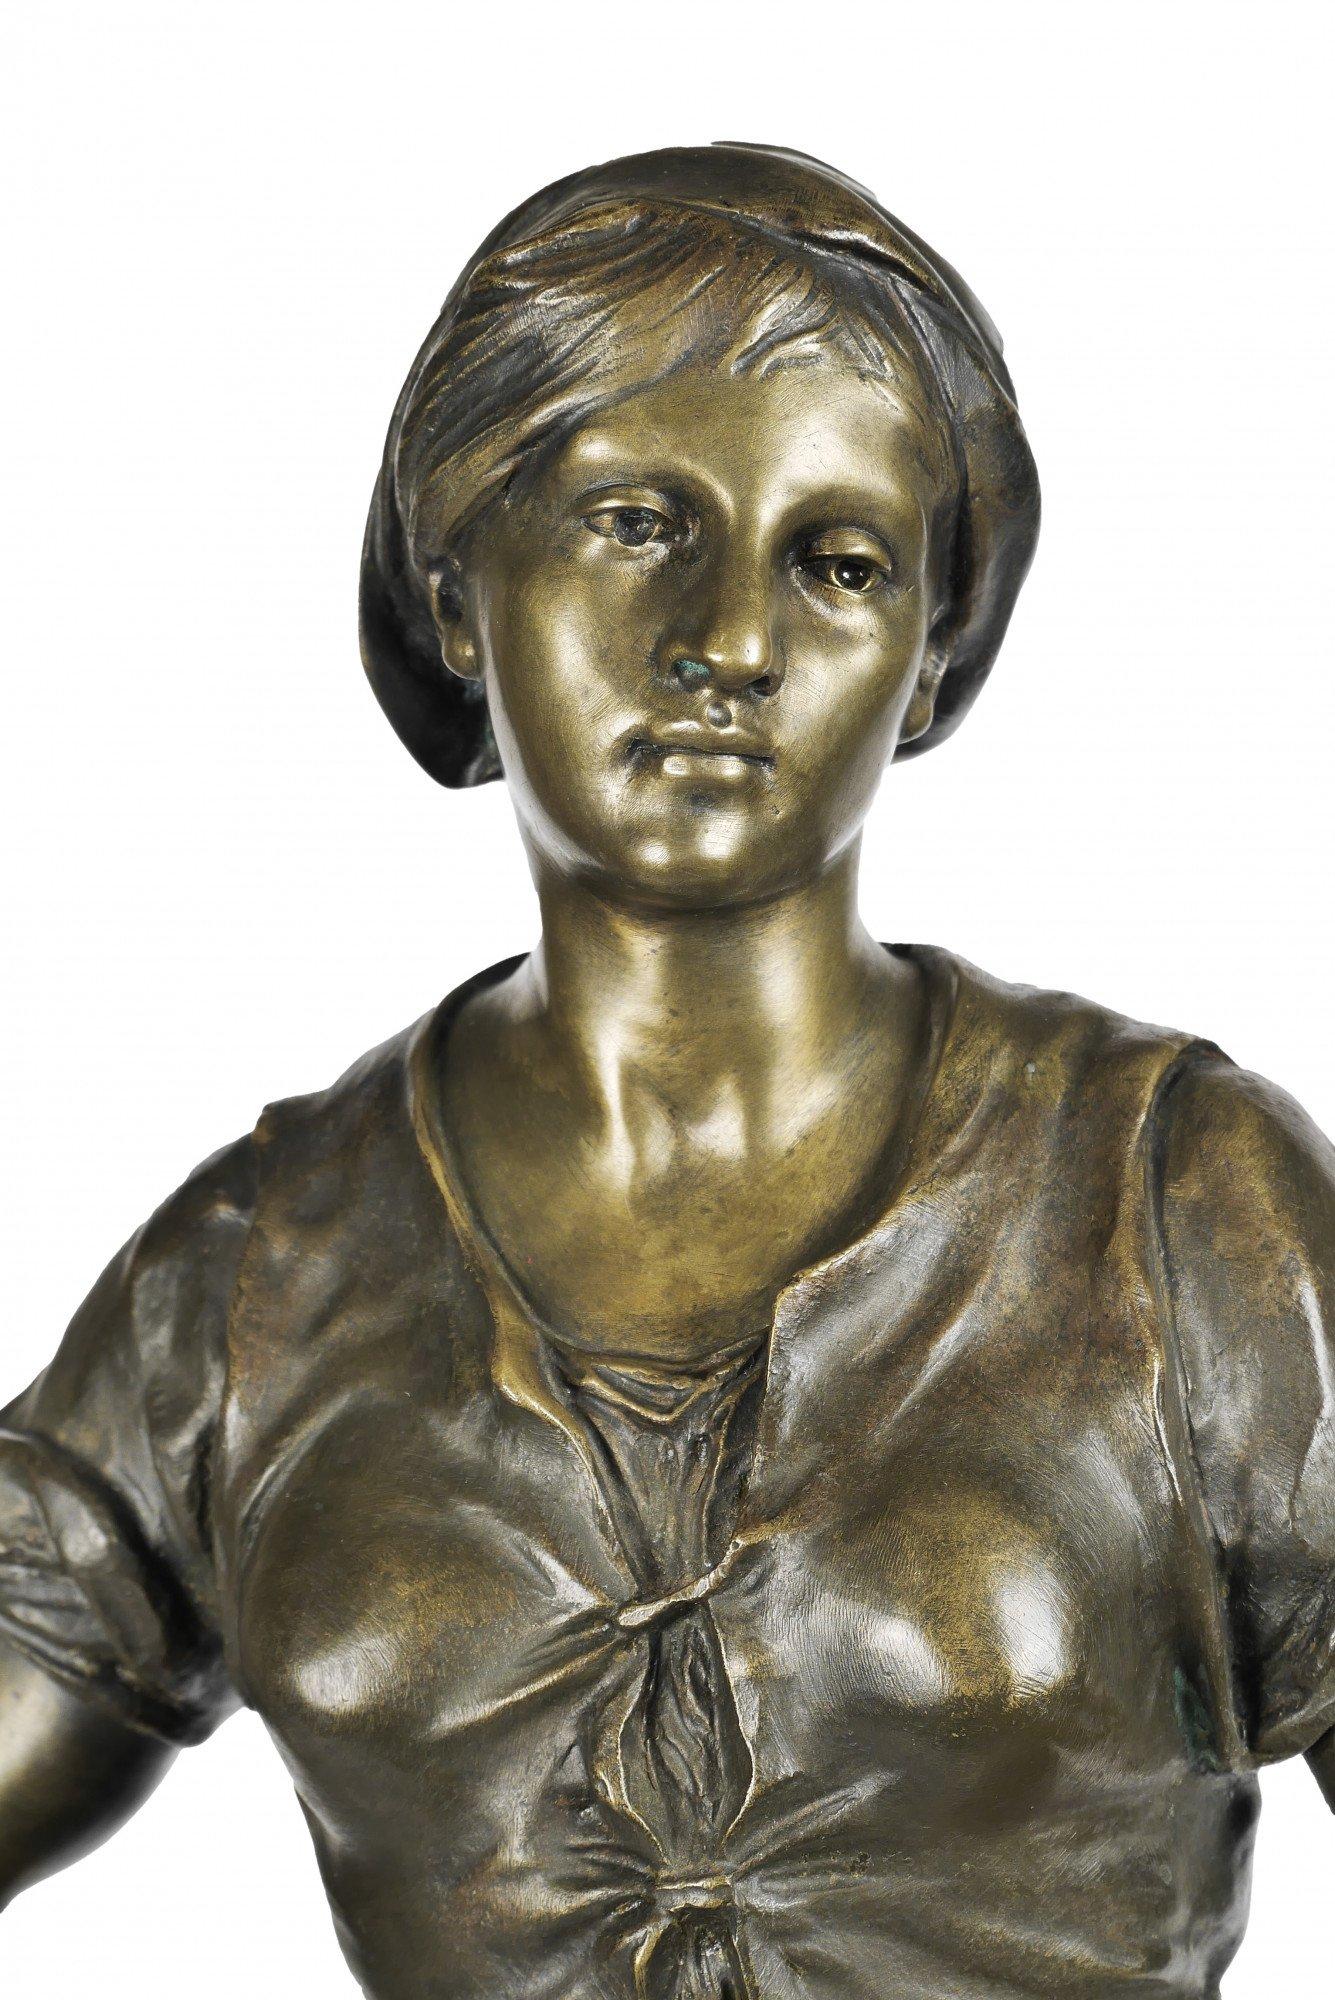 The Fisherwoman, 19th century French bronze sculpture - Sculpture by Émile Louis Picault